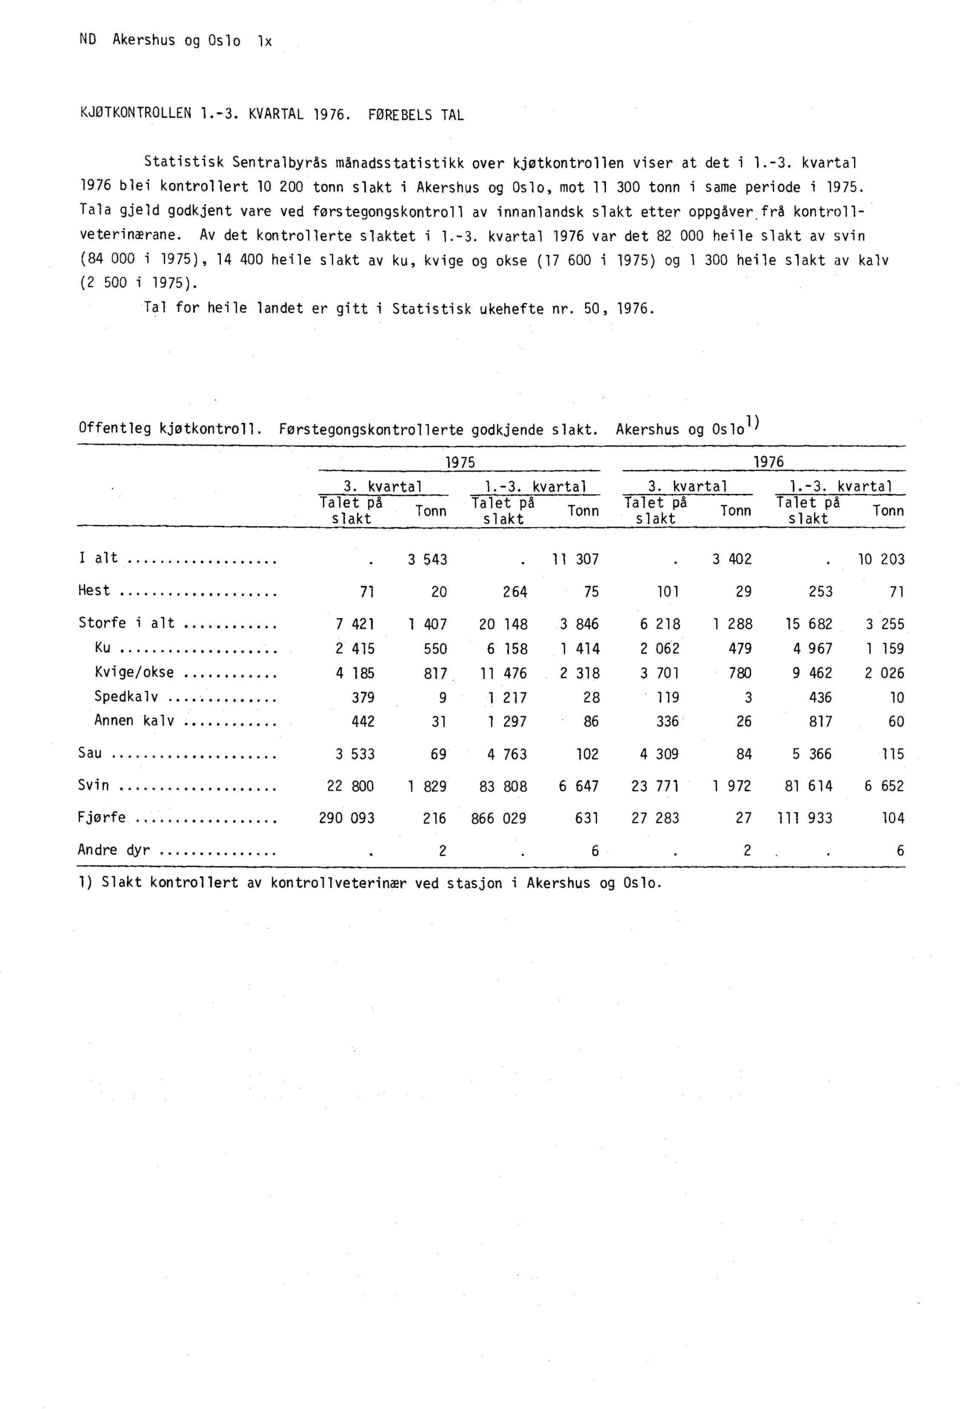 kvartal 1976 var det 82 000 heile slakt av svin (84 000 i 1975), 14 400 heile slakt av ku, kvige og okse (17 600 i 1975) og 1 300 heile slakt av kalv (2 500 i 1975).